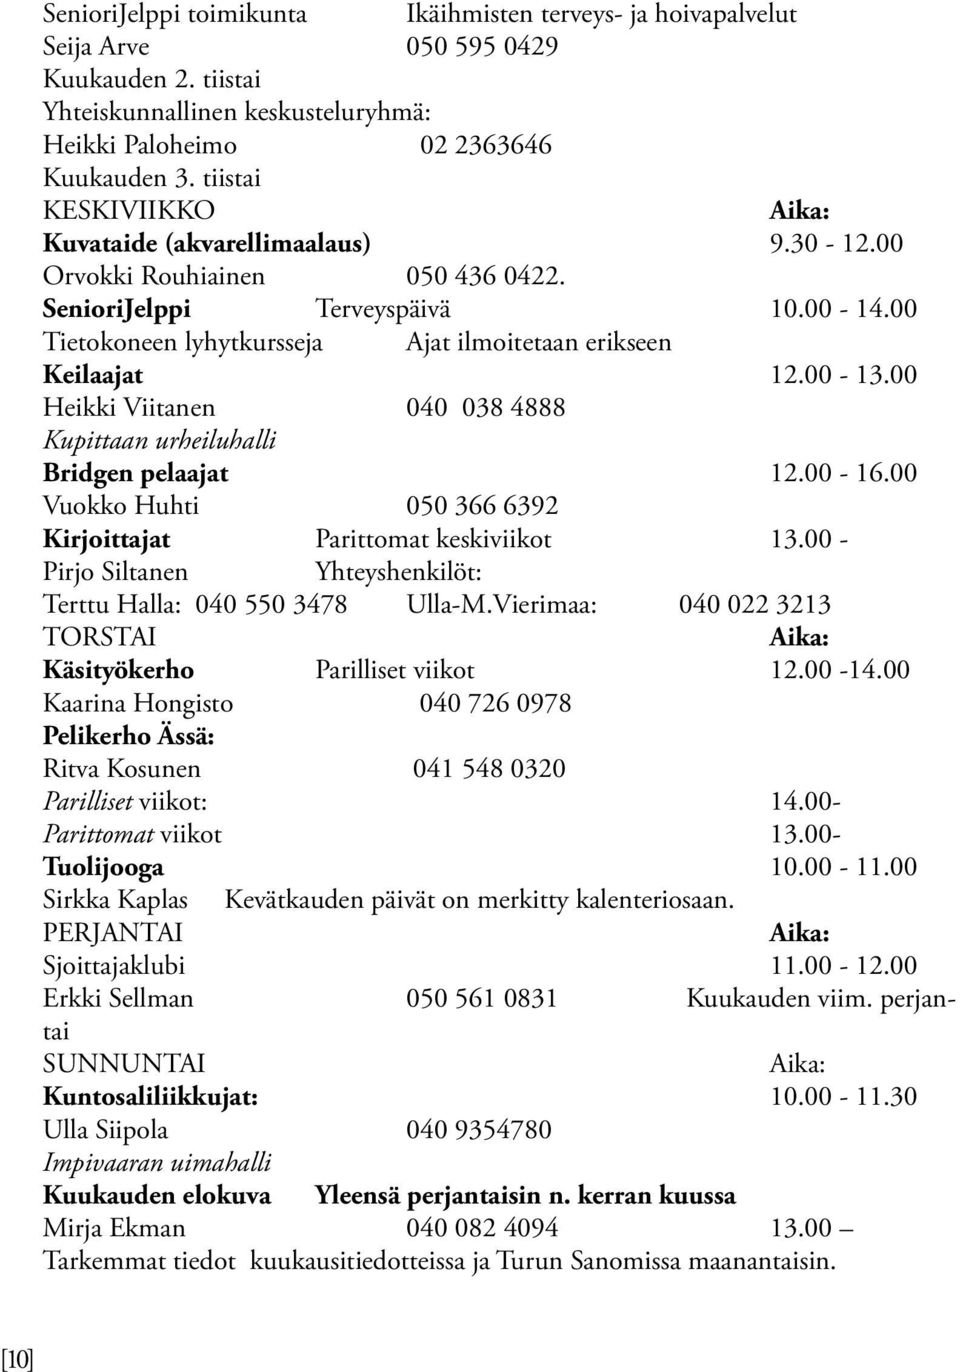 00 Tietokoneen lyhytkursseja Ajat ilmoitetaan erikseen Keilaajat 12.00-13.00 Heikki Viitanen 040 038 4888 Kupittaan urheiluhalli Bridgen pelaajat 12.00-16.